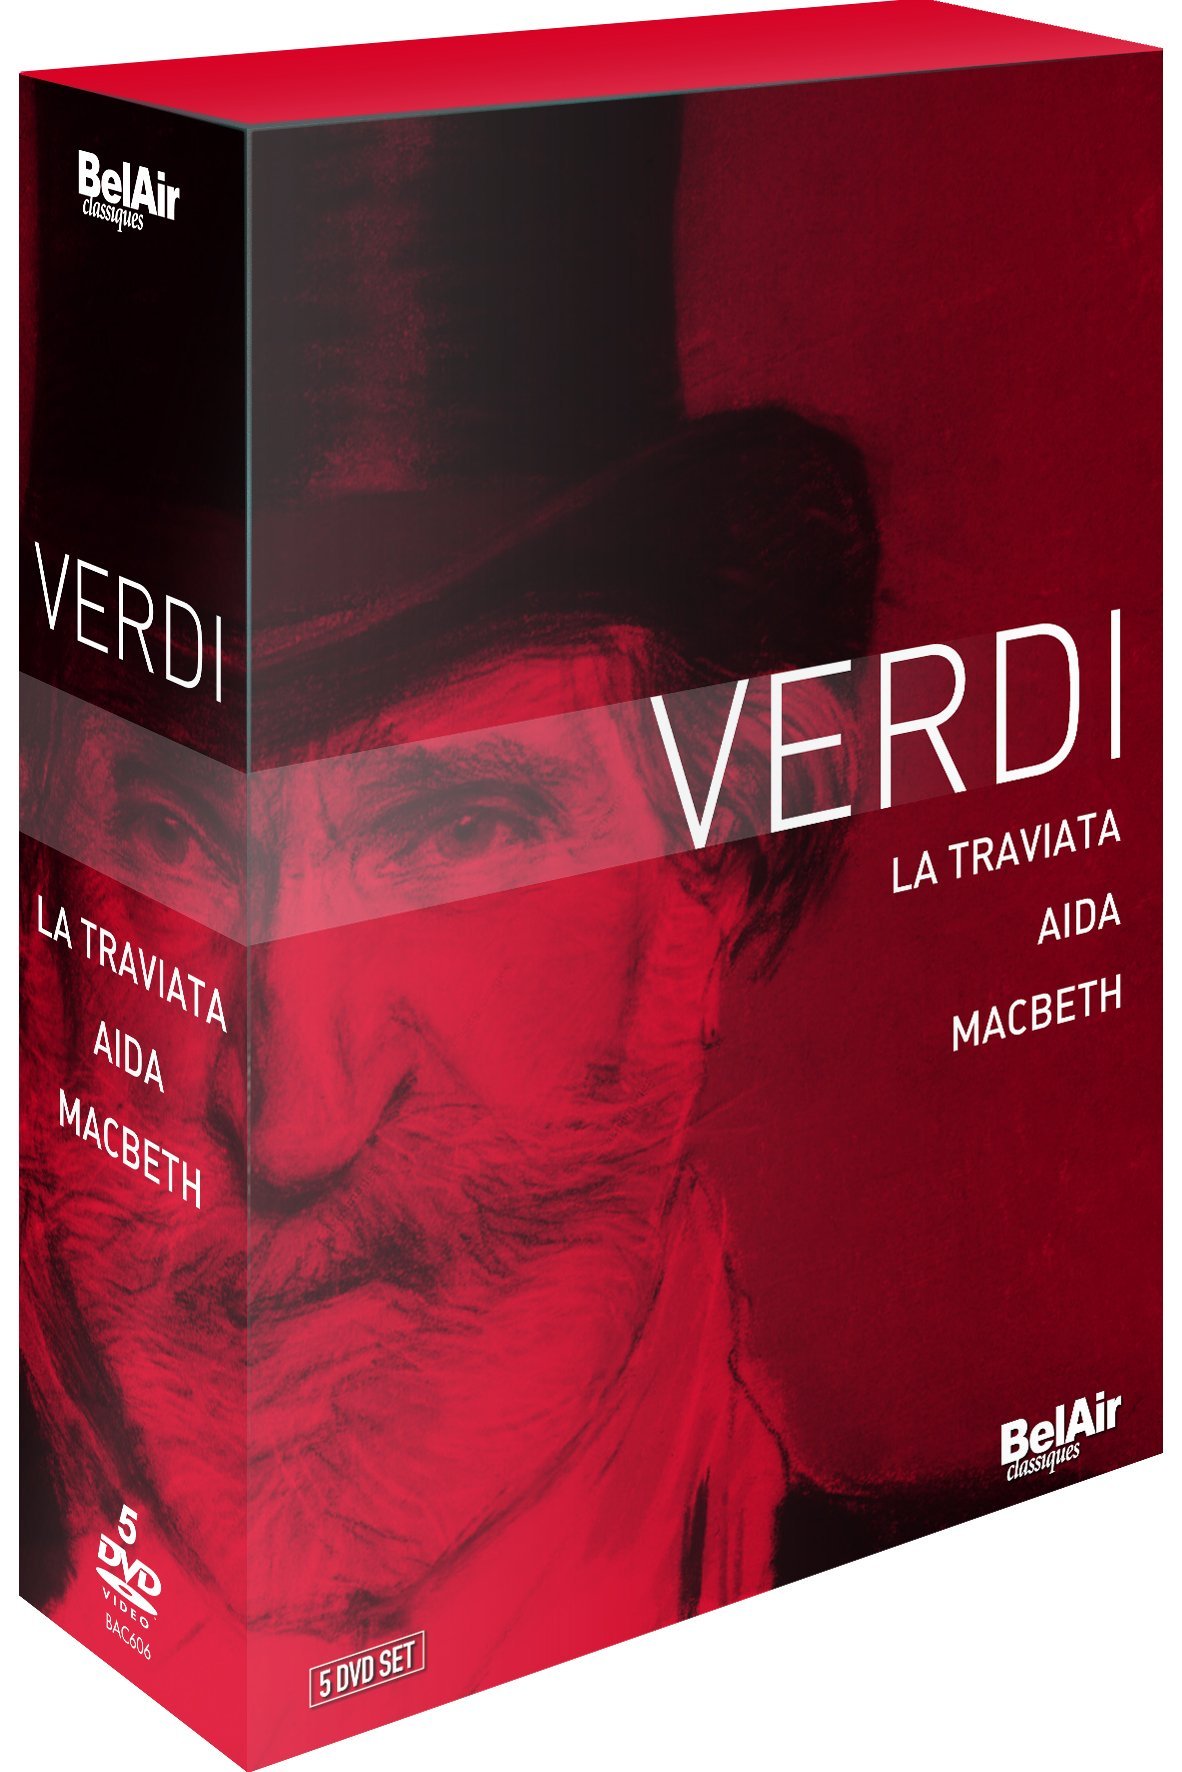 Music Dvd Giuseppe Verdi - La Traviata, Aida, Macbeth (5 Dvd) NUOVO SIGILLATO, EDIZIONE DEL 14/11/2013 SUBITO DISPONIBILE